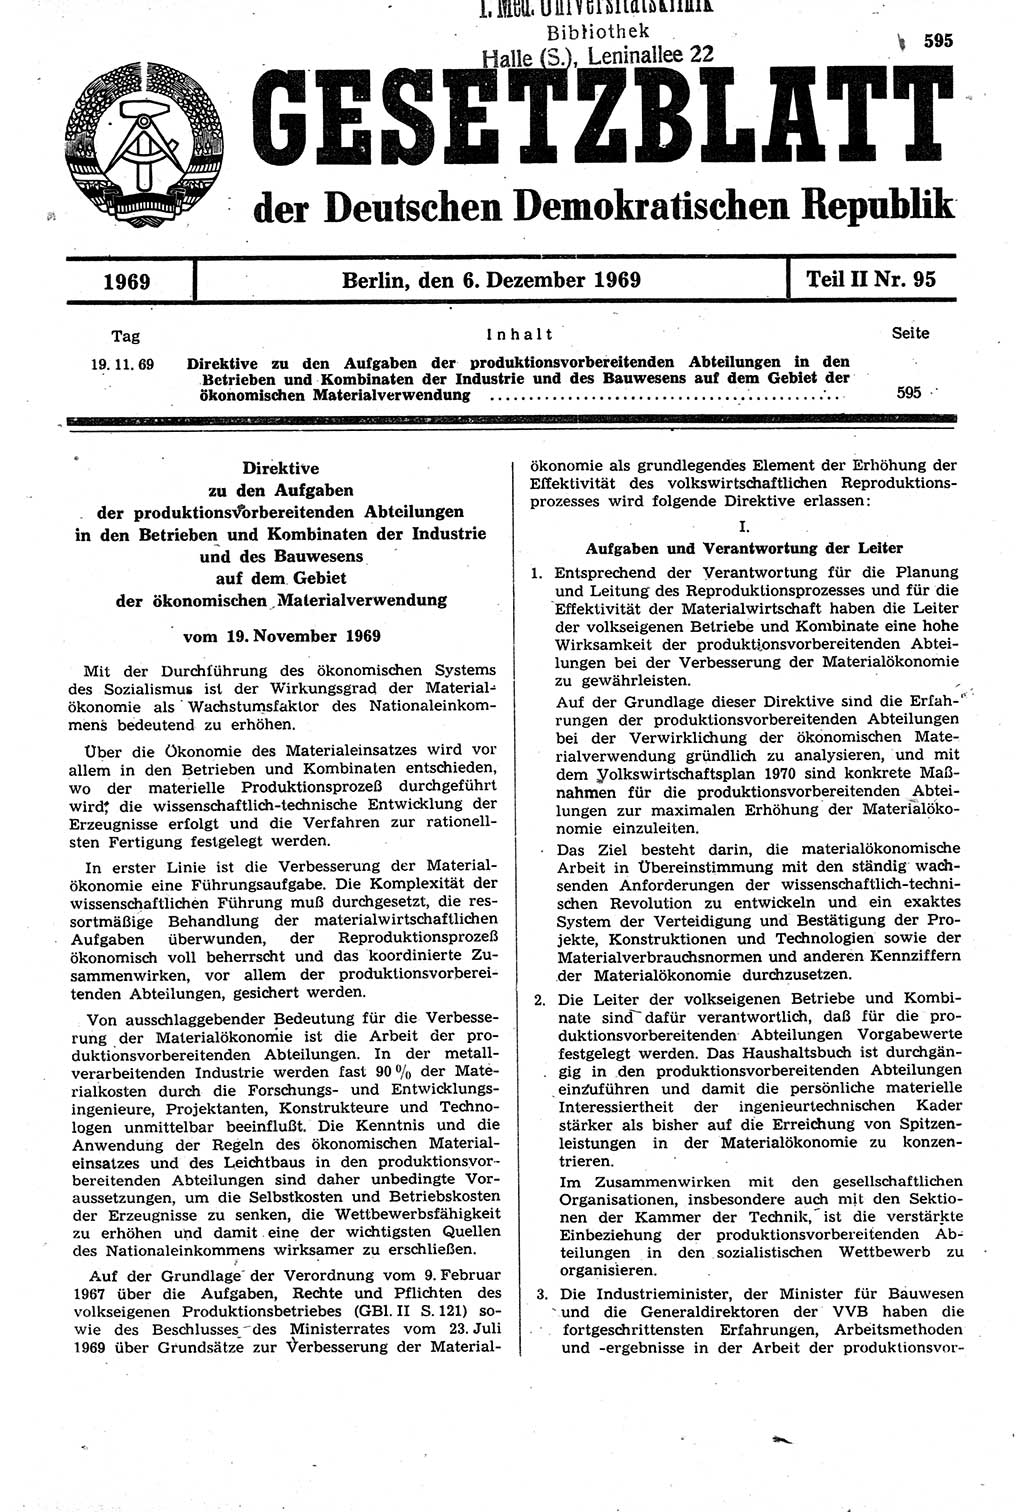 Gesetzblatt (GBl.) der Deutschen Demokratischen Republik (DDR) Teil ⅠⅠ 1969, Seite 595 (GBl. DDR ⅠⅠ 1969, S. 595)